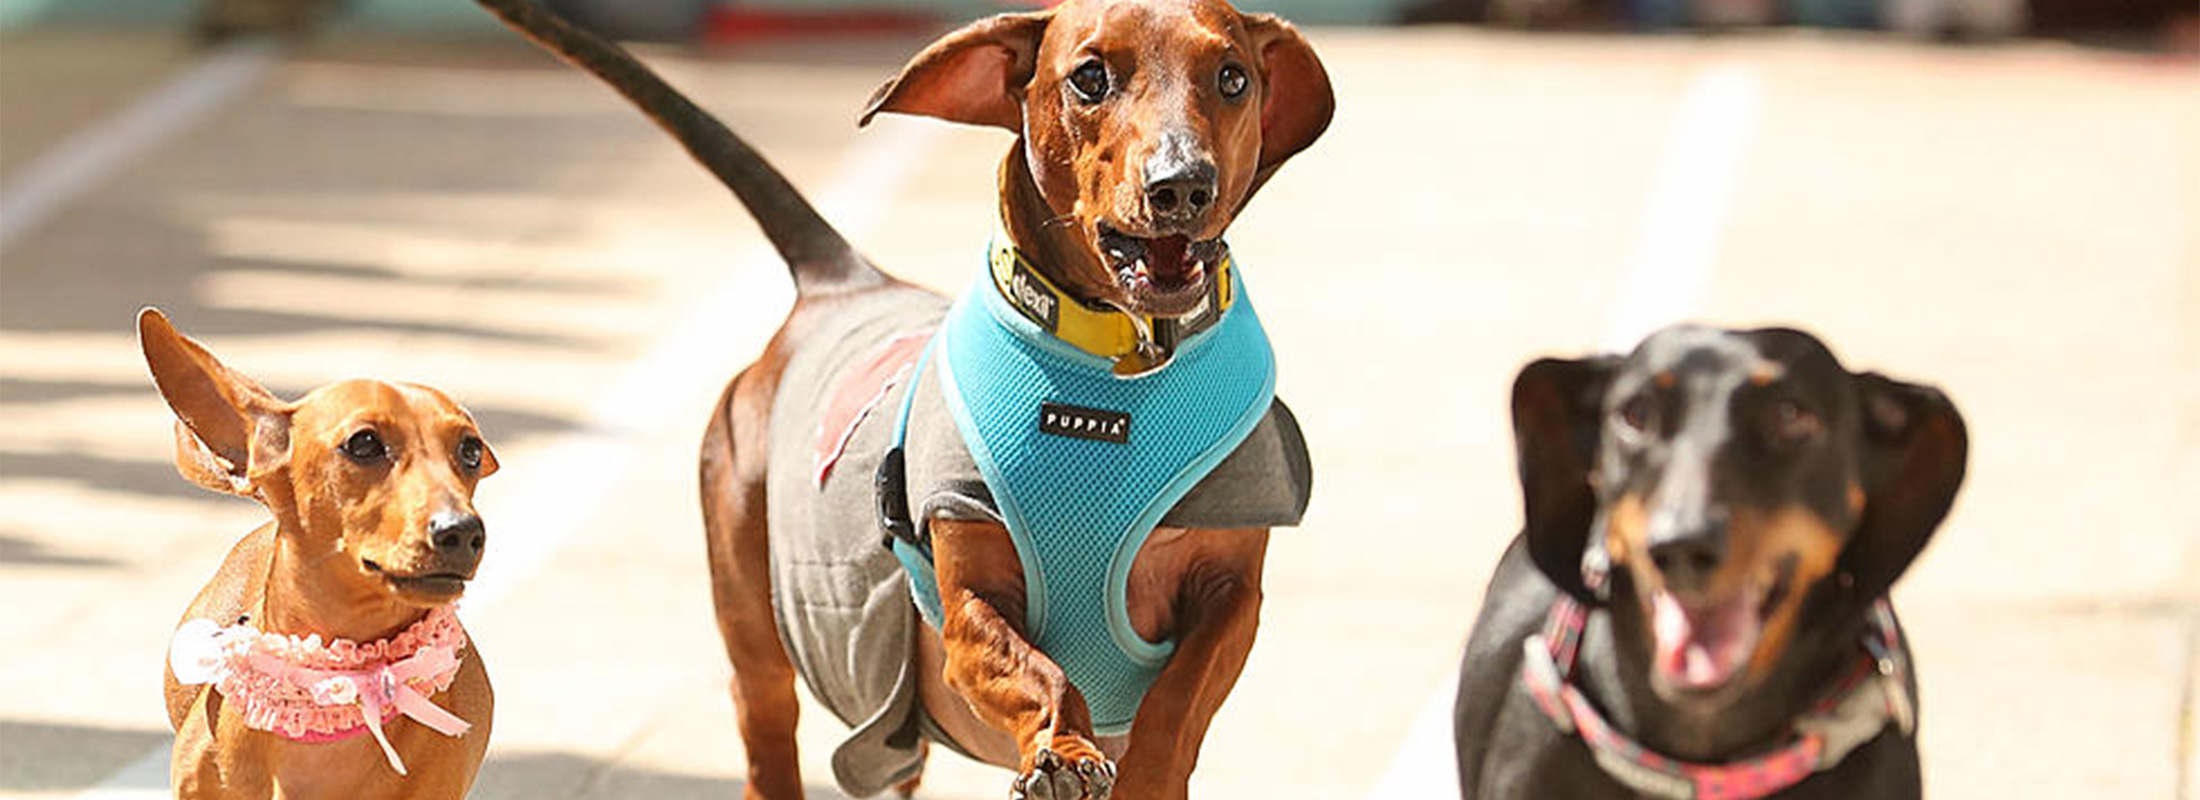 Wiener Dog Races return to the 2022 race meet at Ellis Park!